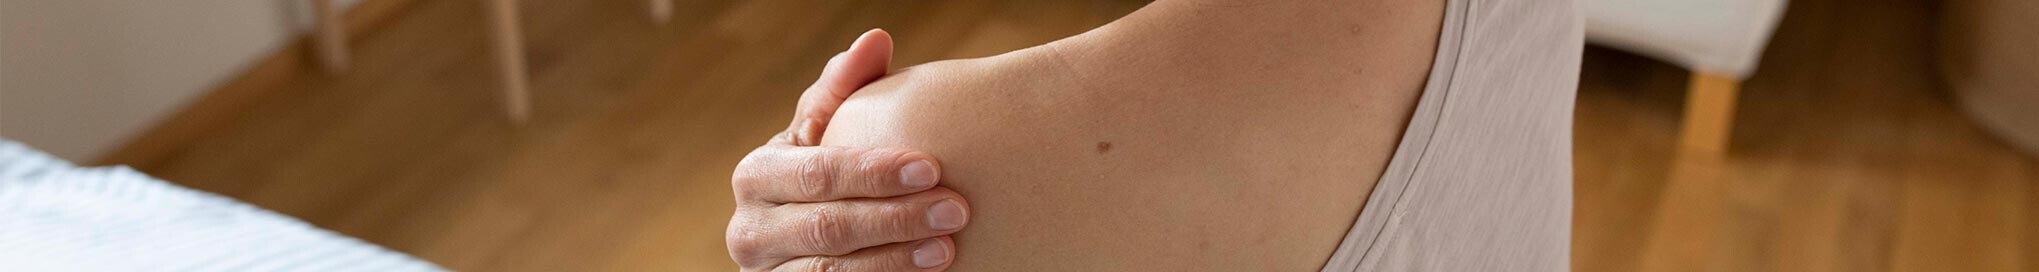 Ratgeber Haut Hautreizungen & Hautverletzungen